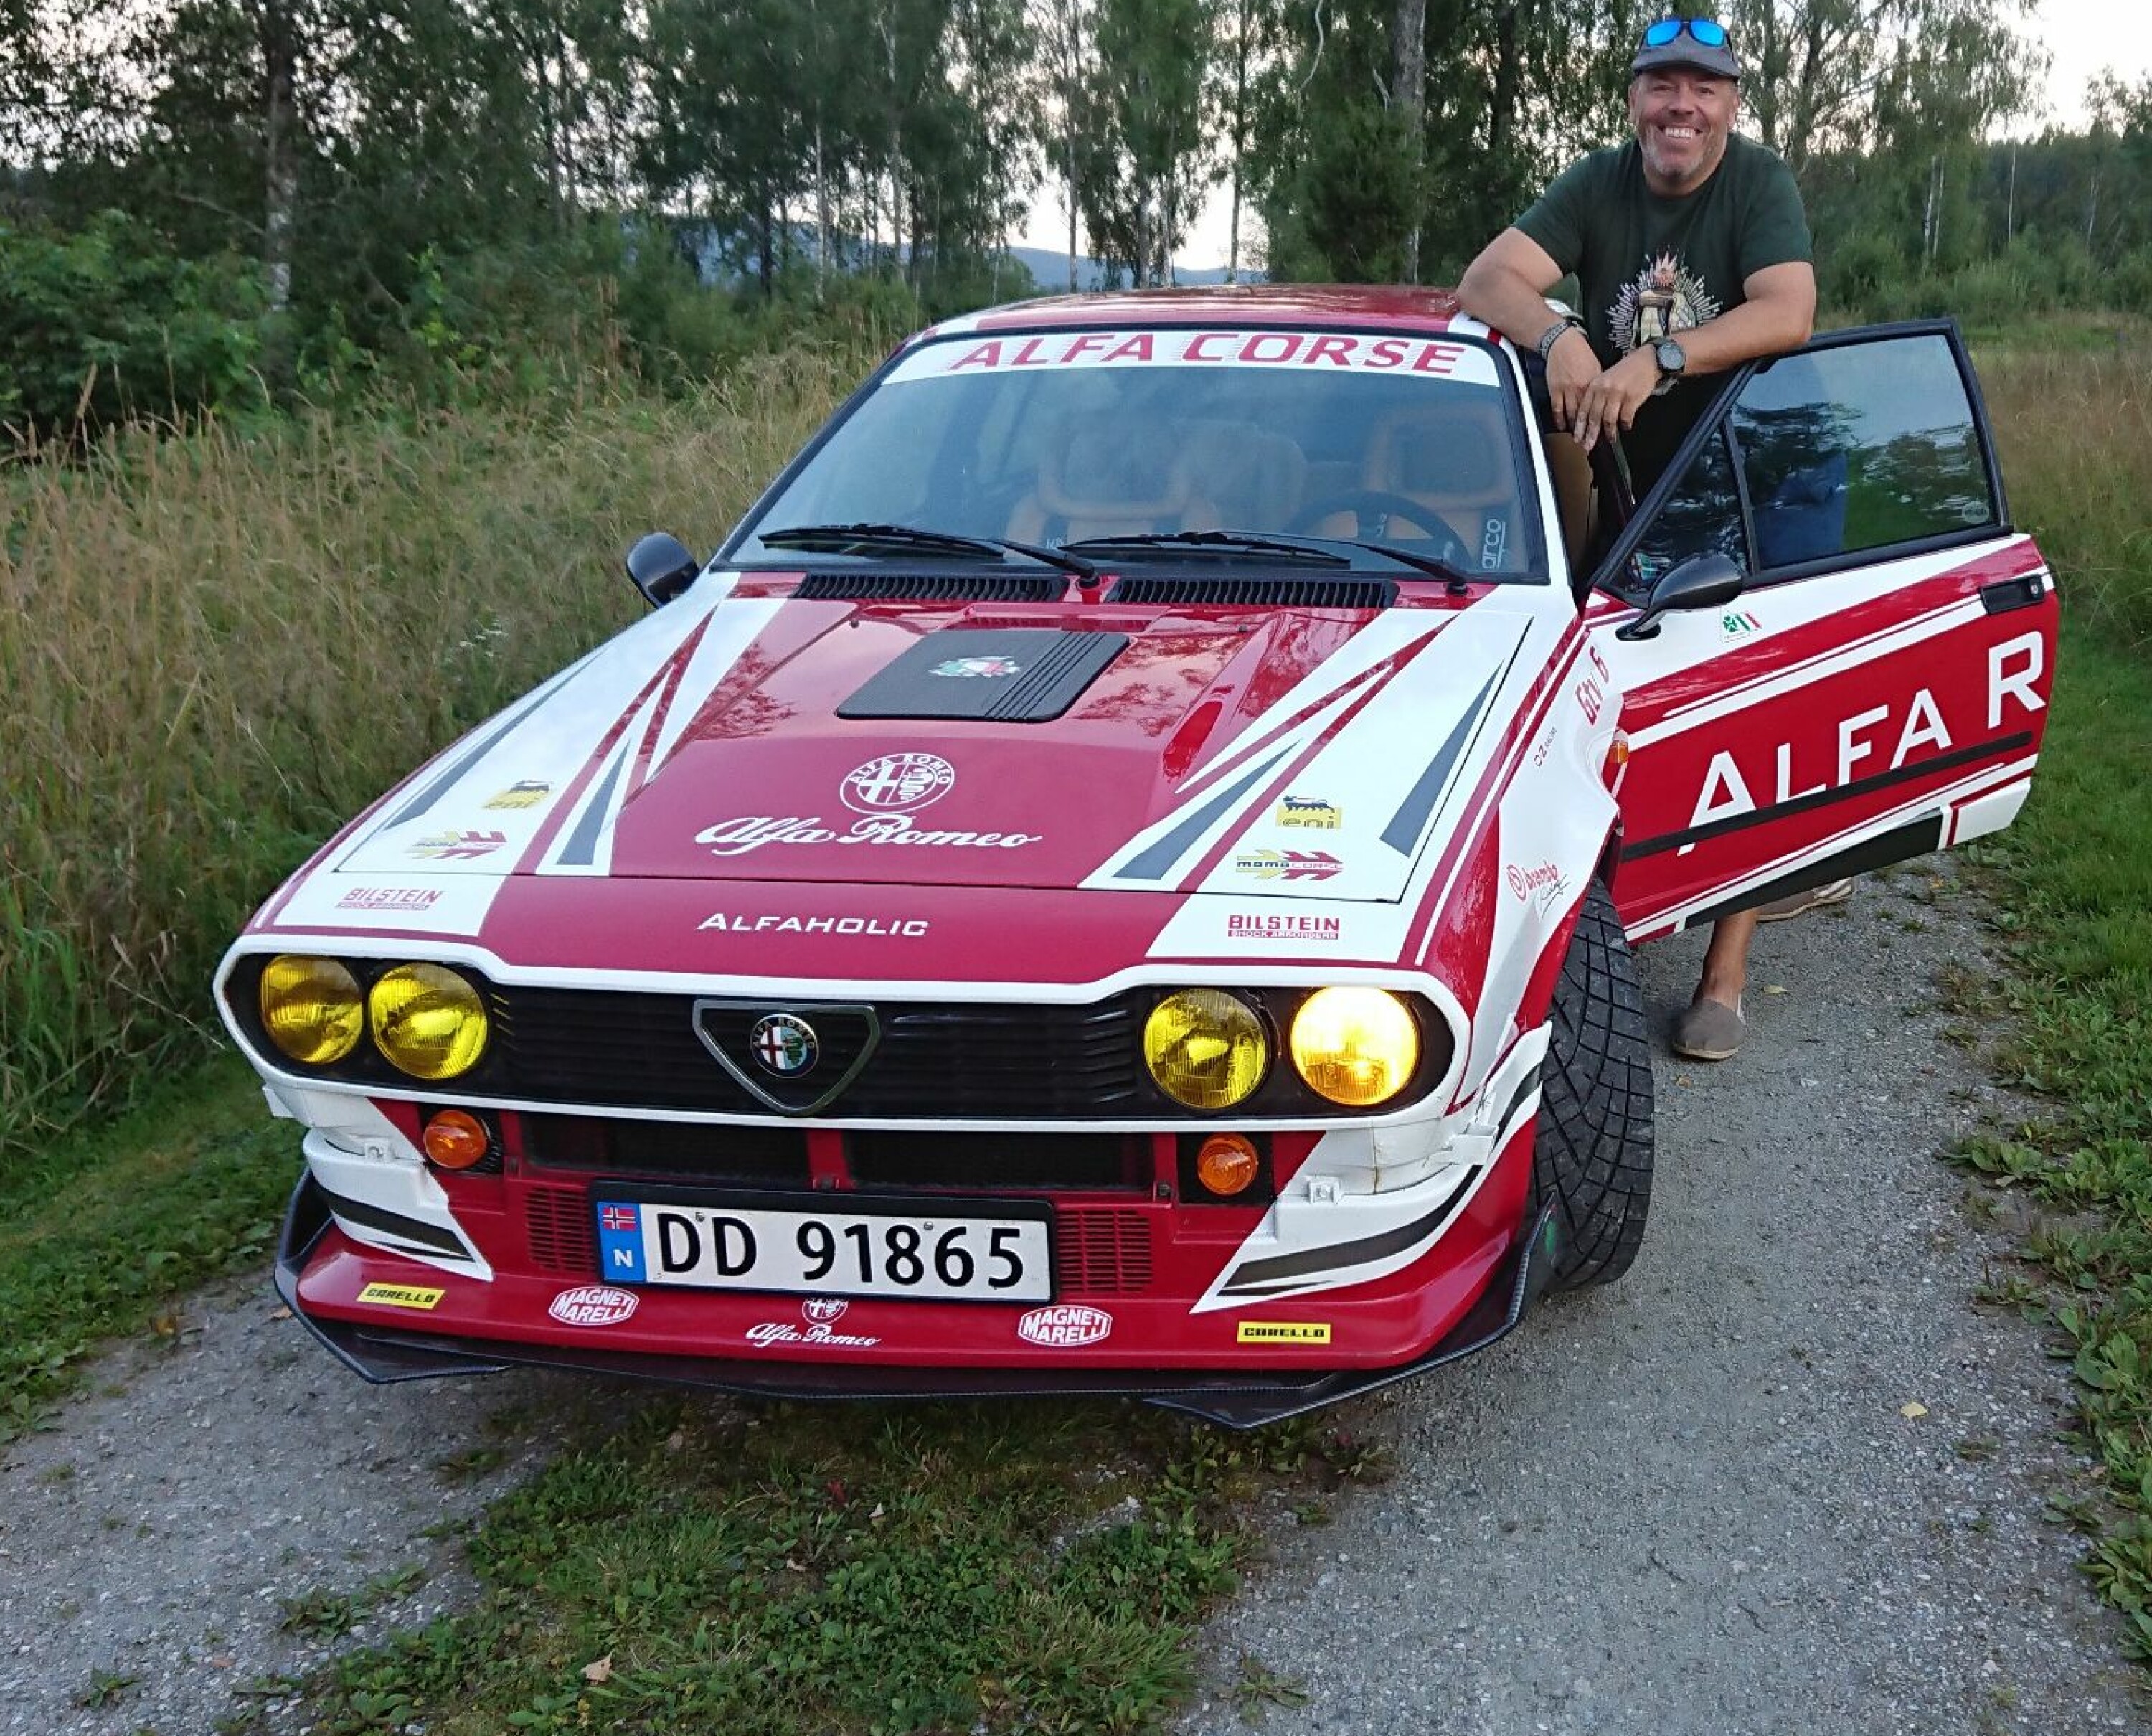 FINN 15 FEIL: – Å være Alfa-entusiast handler om å nyte bilen med alle dens feil, sier Eirik Nordbye.